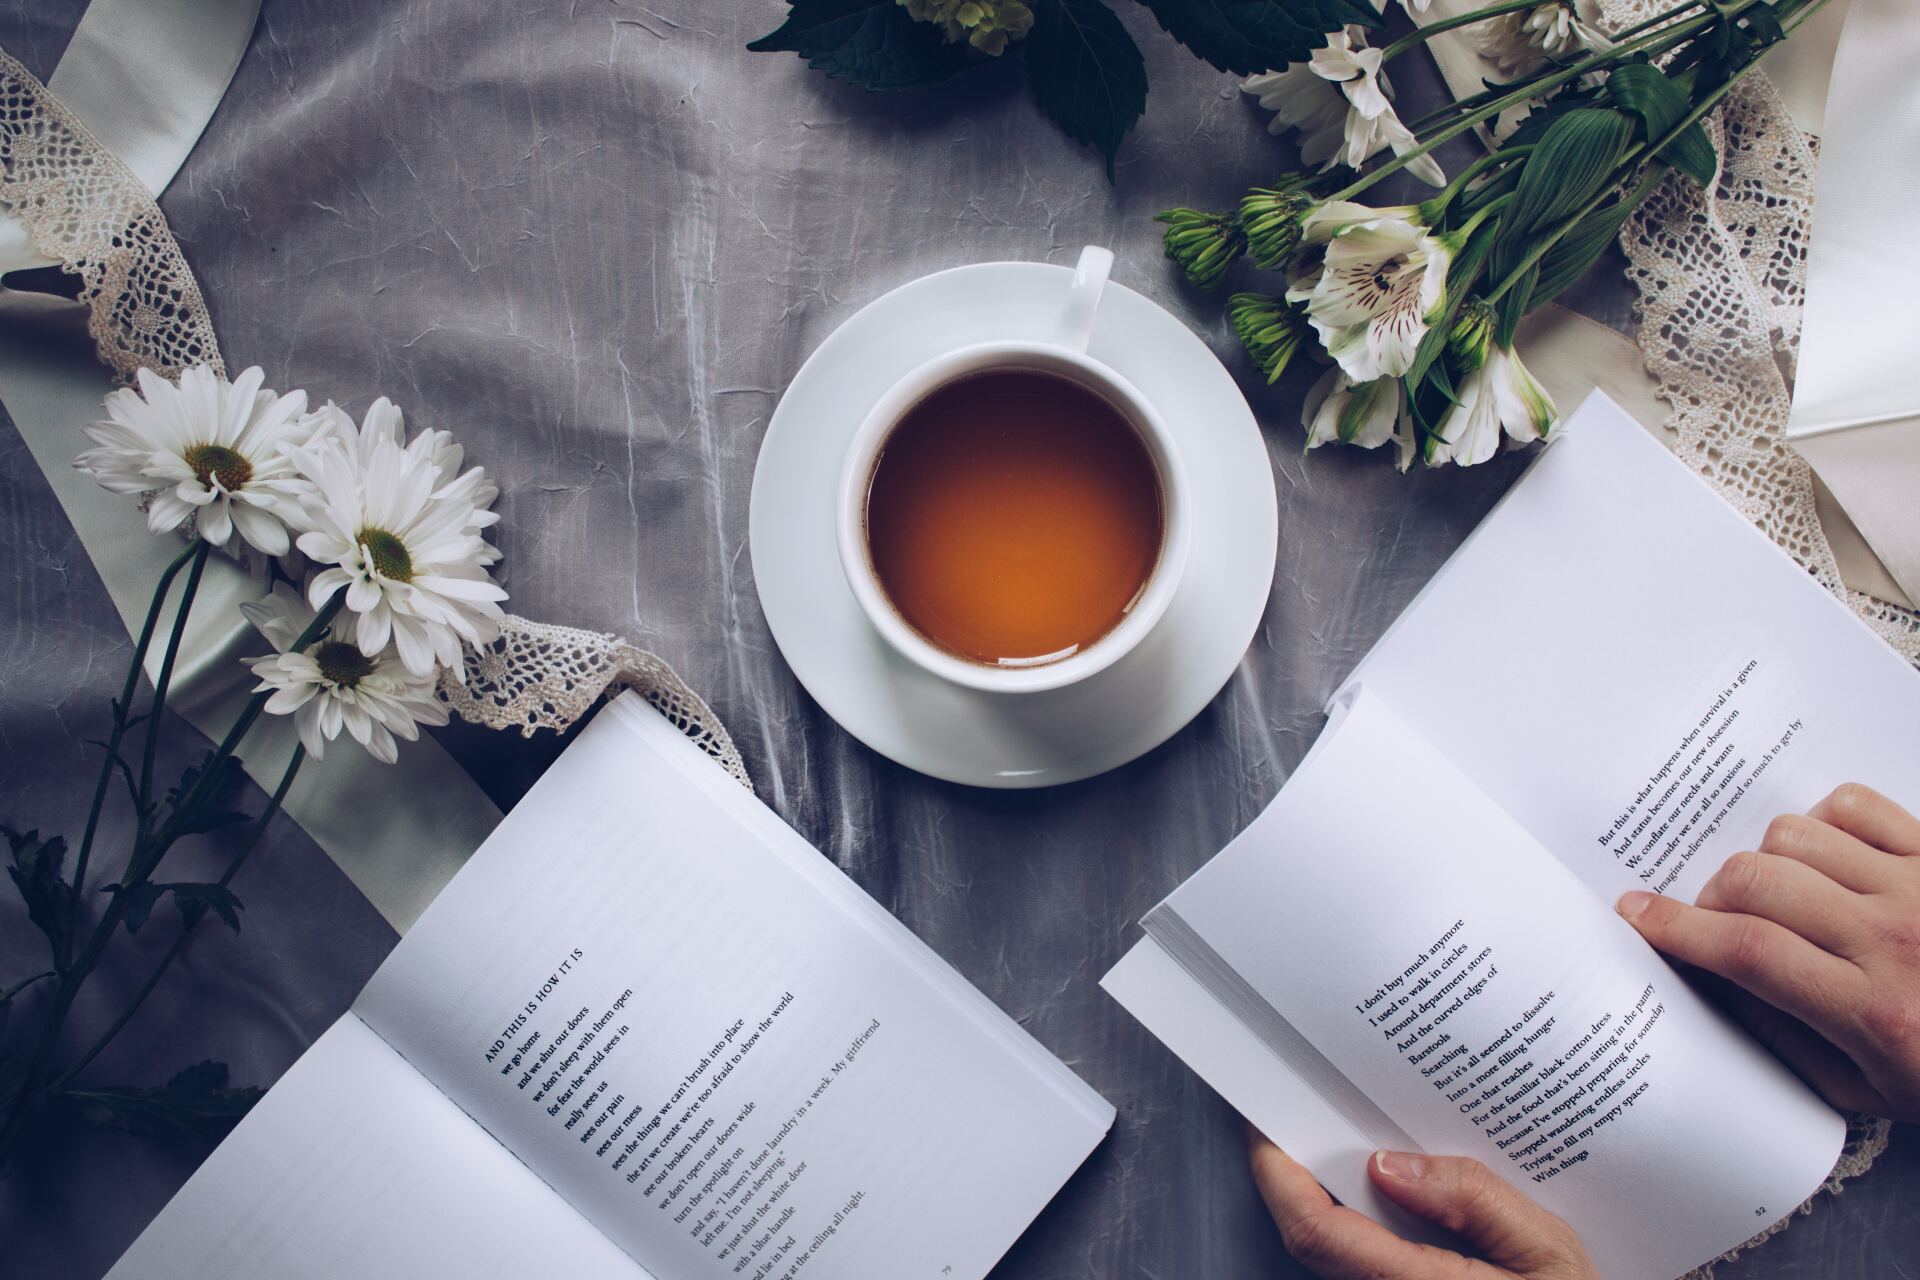 Een persoon leest een boek naast een kopje thee en bloemen.